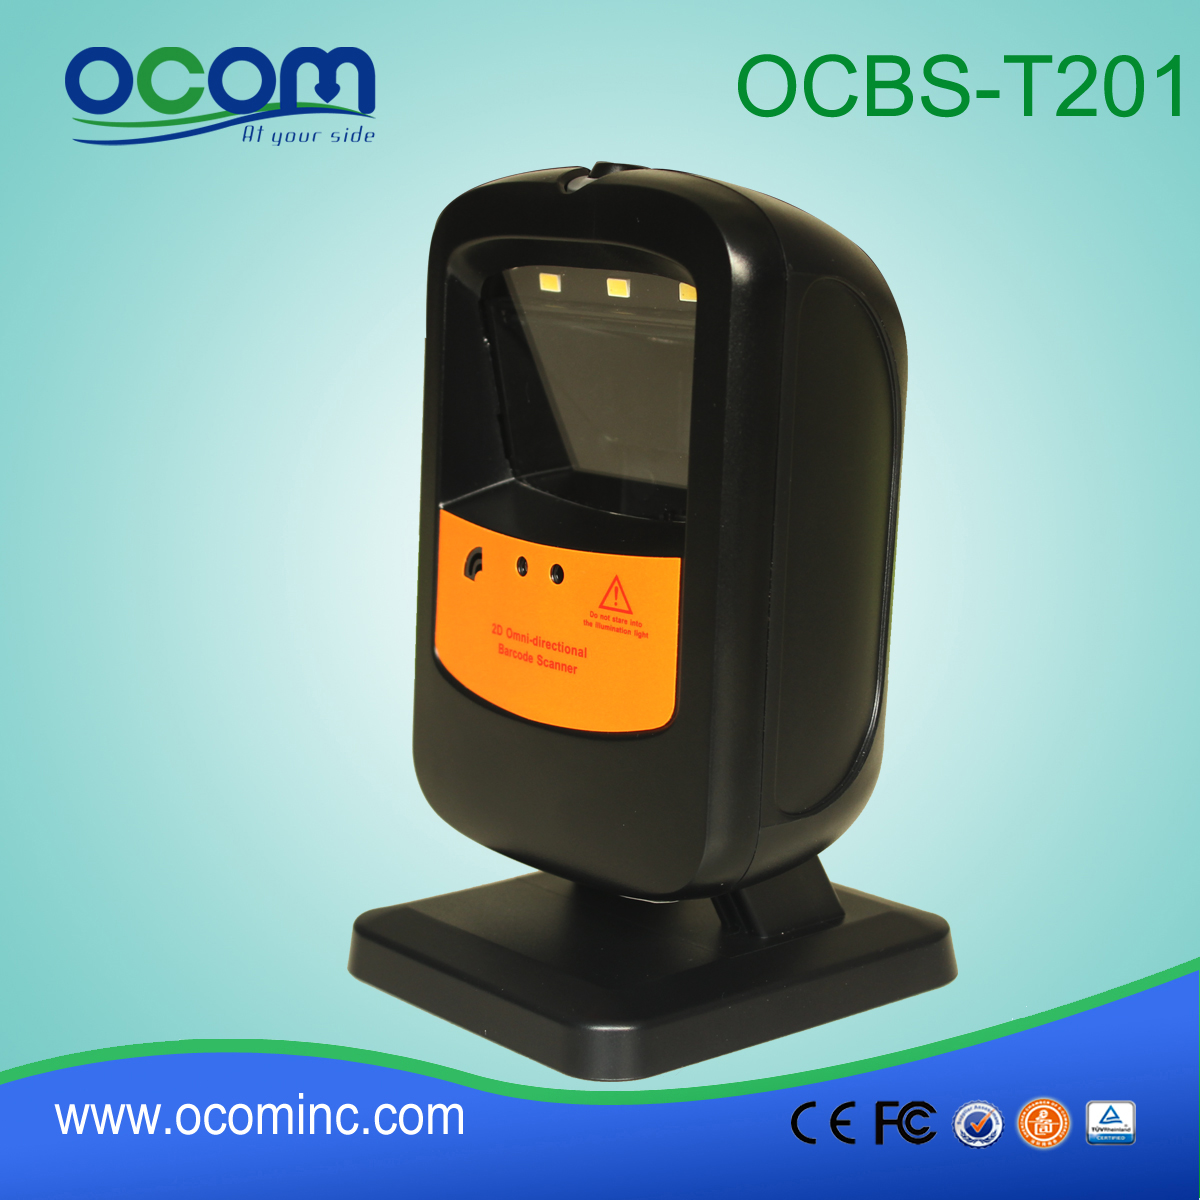 二维 Omini 自动感应条码扫描器，全方位条码扫描器 (OCBS- T201)